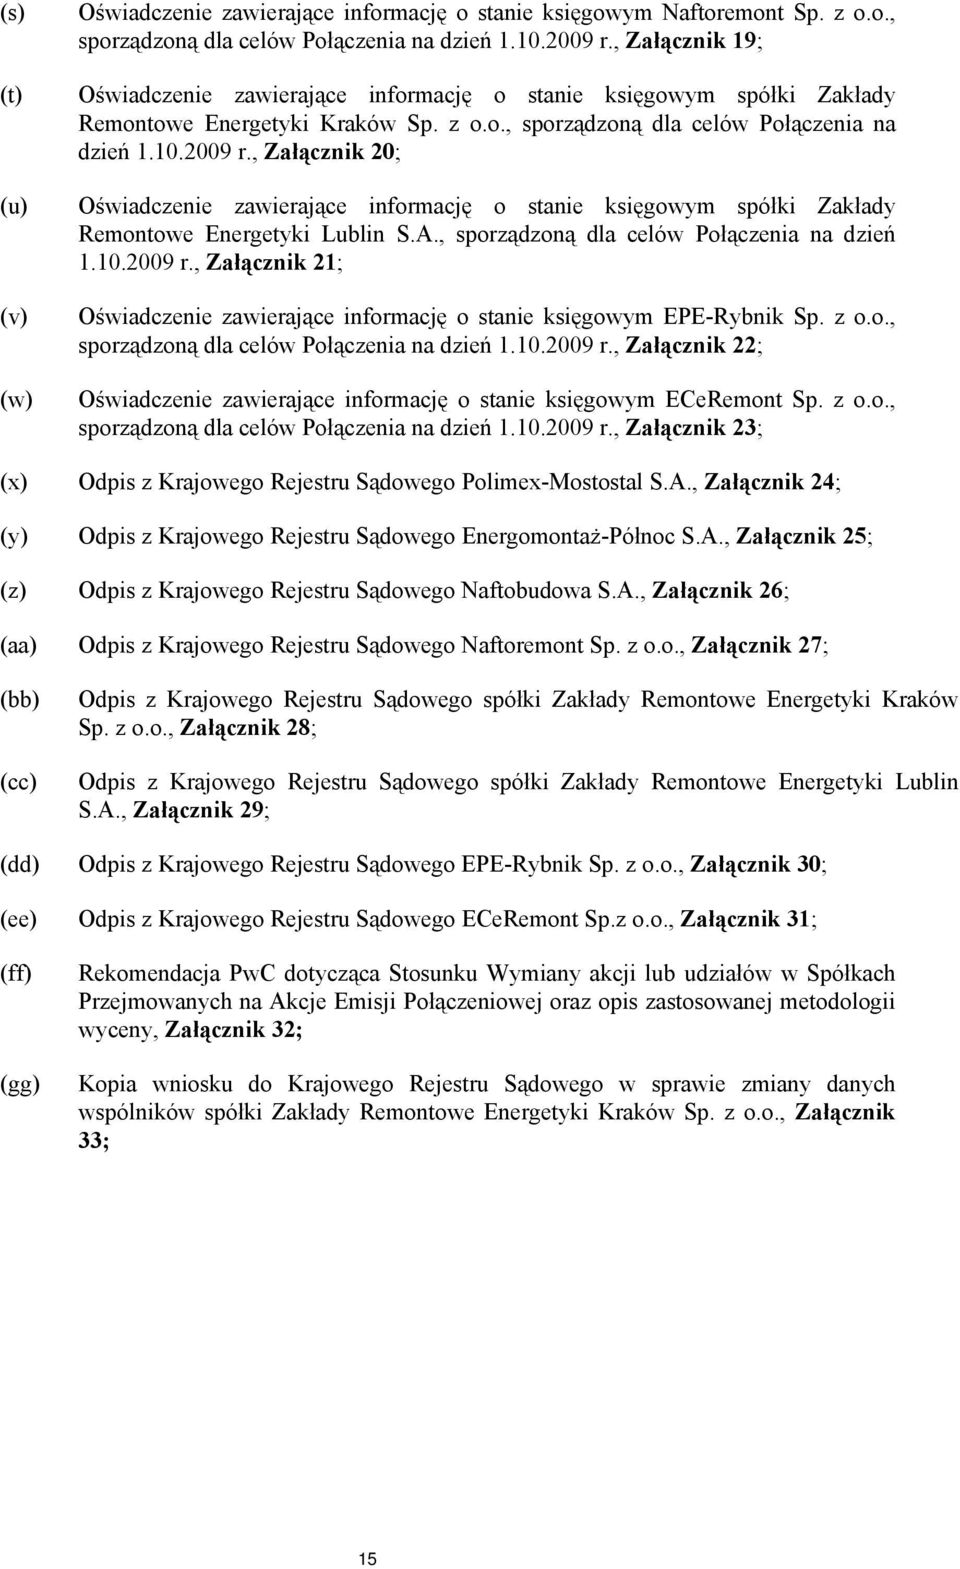 , Załącznik 20; Oświadczenie zawierające informację o stanie księgowym spółki Zakłady Remontowe Energetyki Lublin S.A., sporządzoną dla celów Połączenia na dzień 1.10.2009 r.